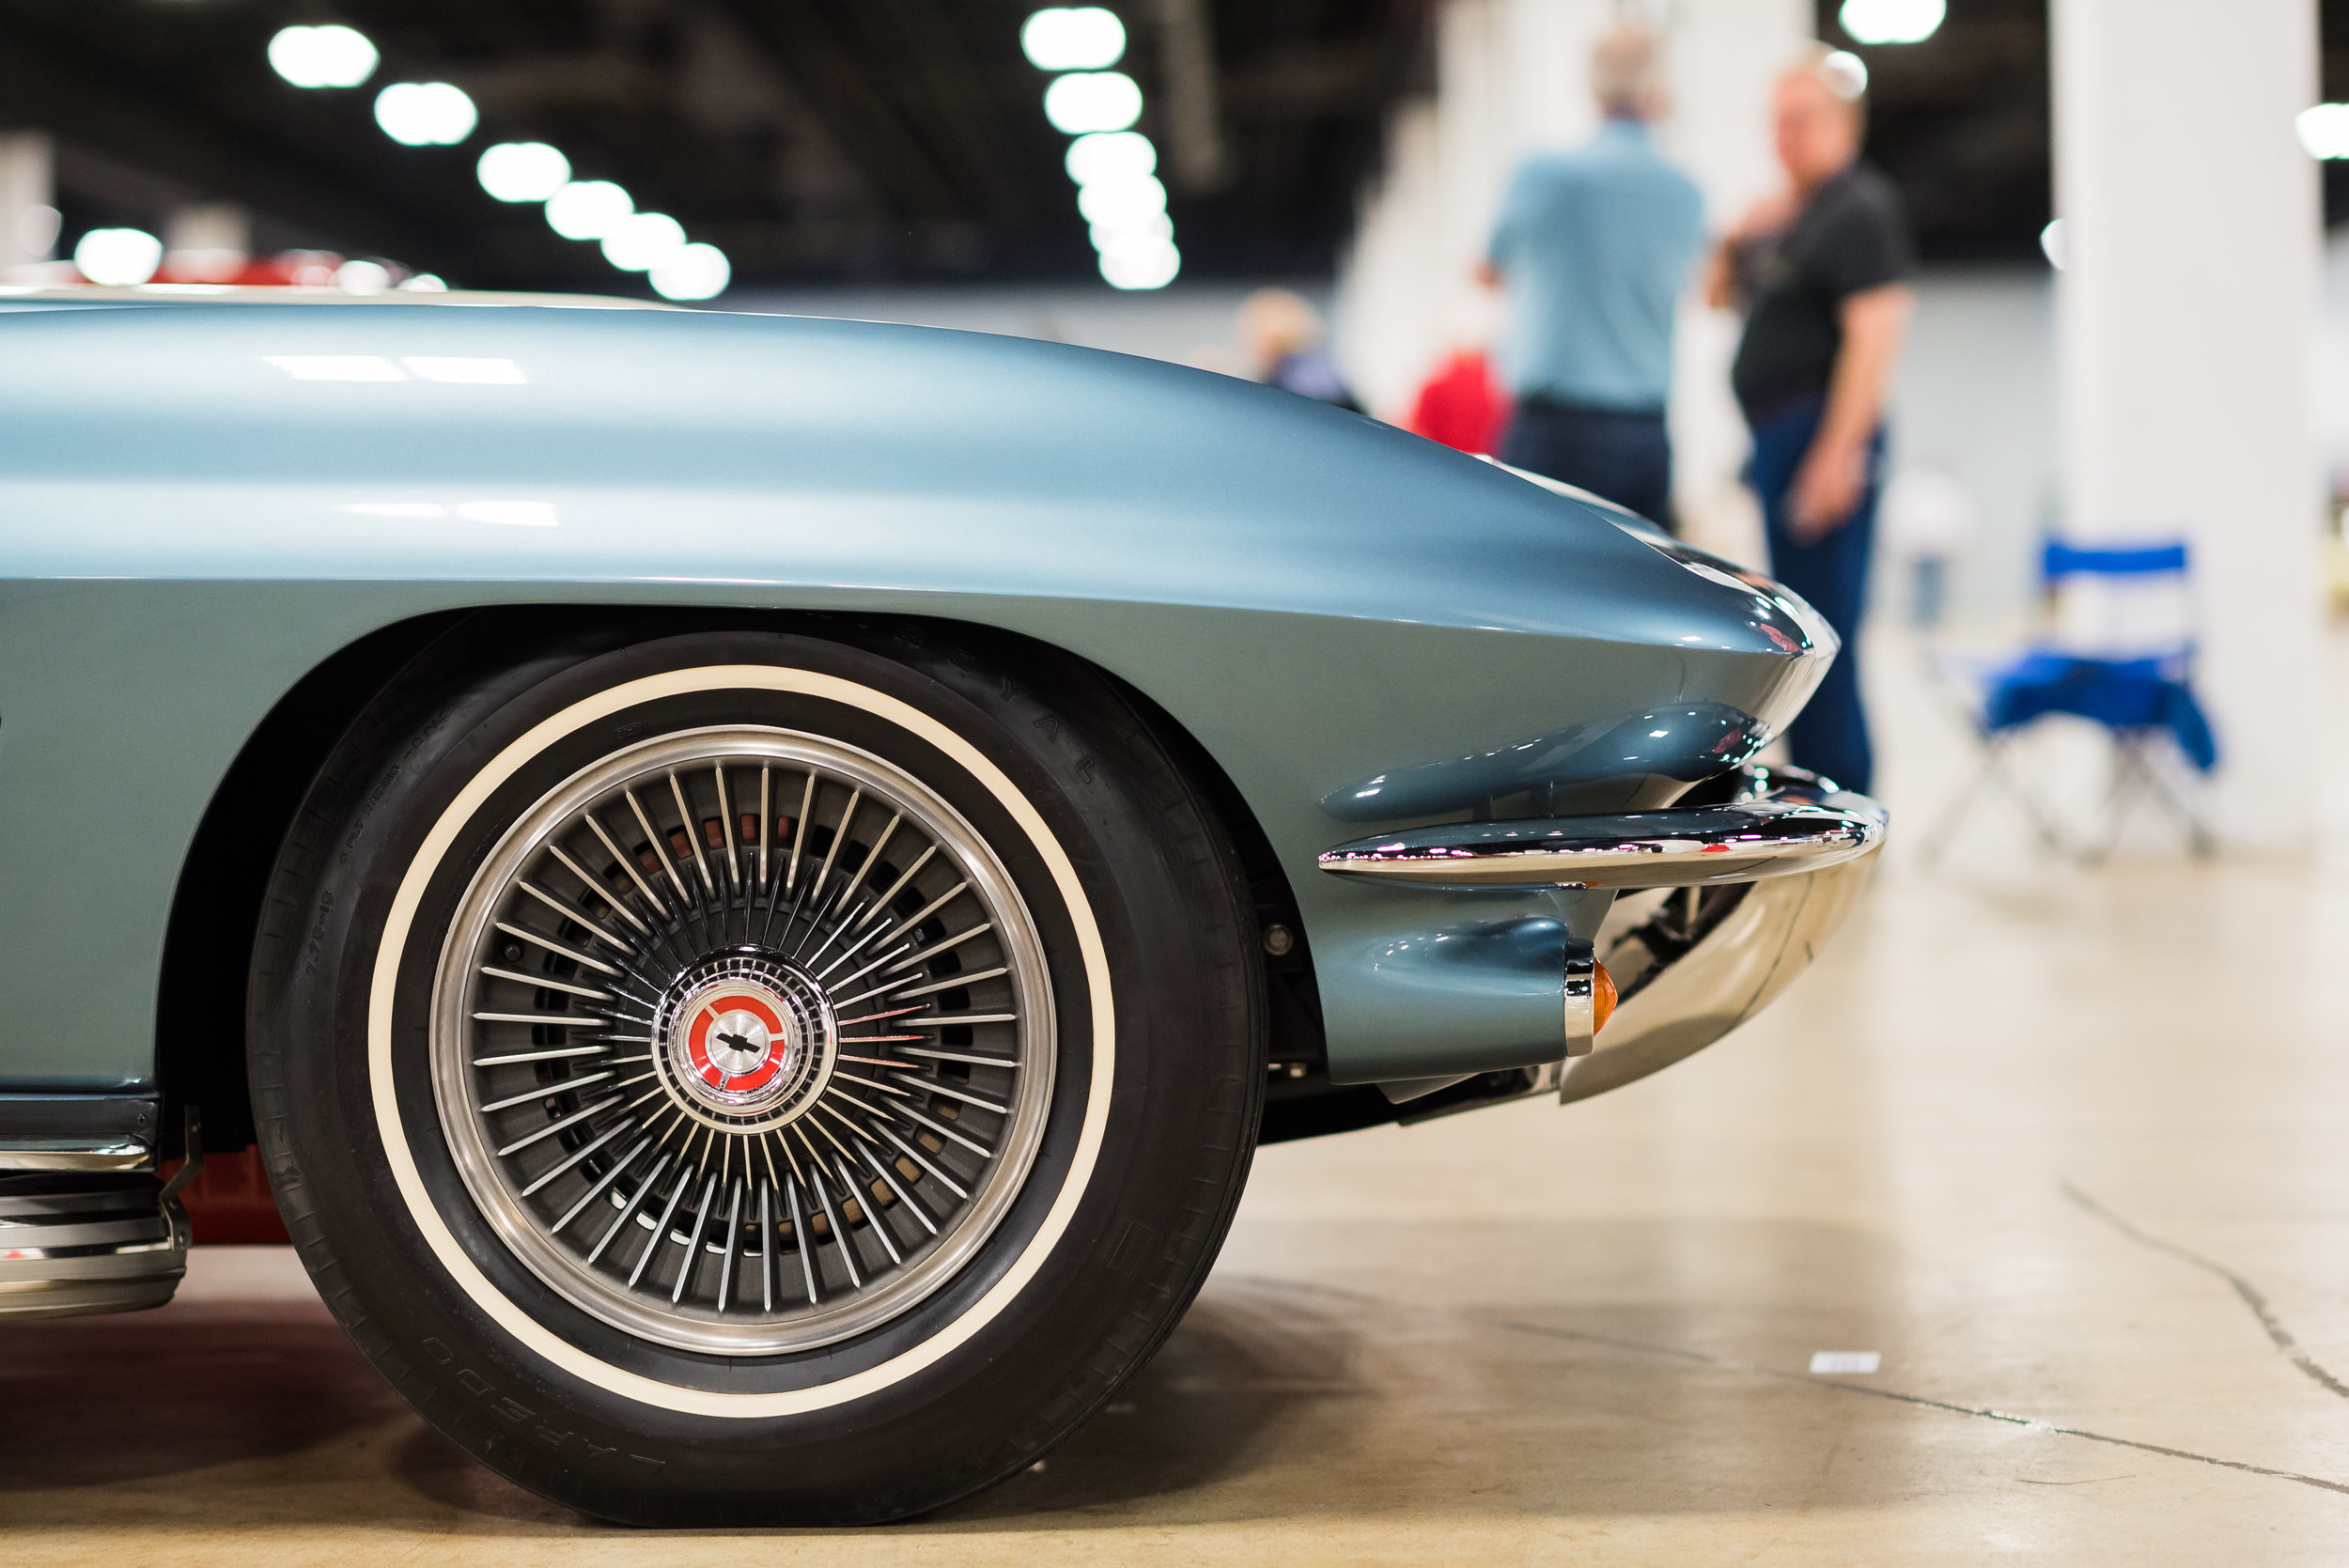 1967 Corvette Wheel